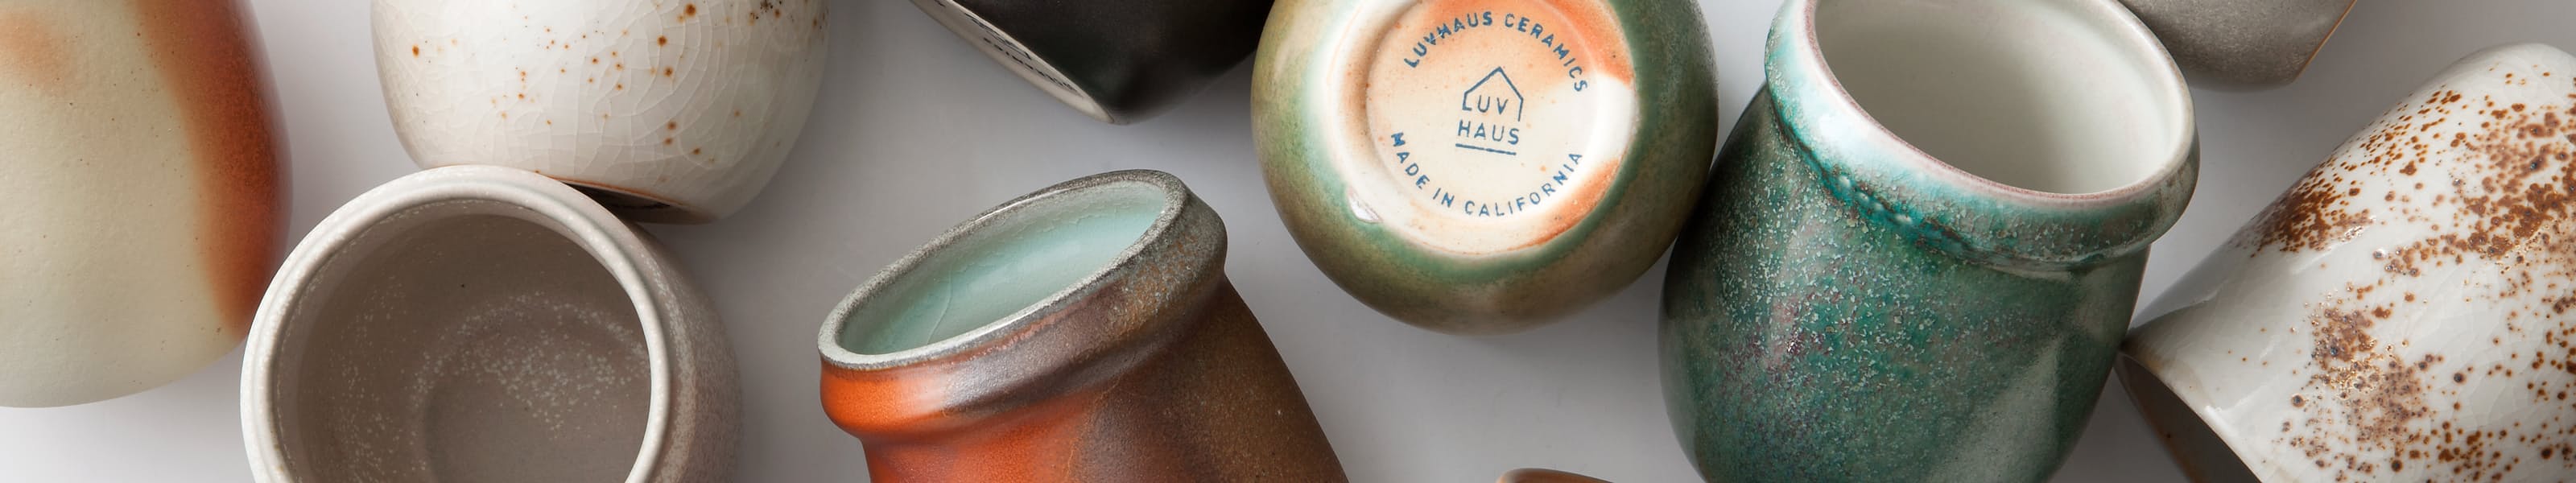 Luvhaus Ceramics